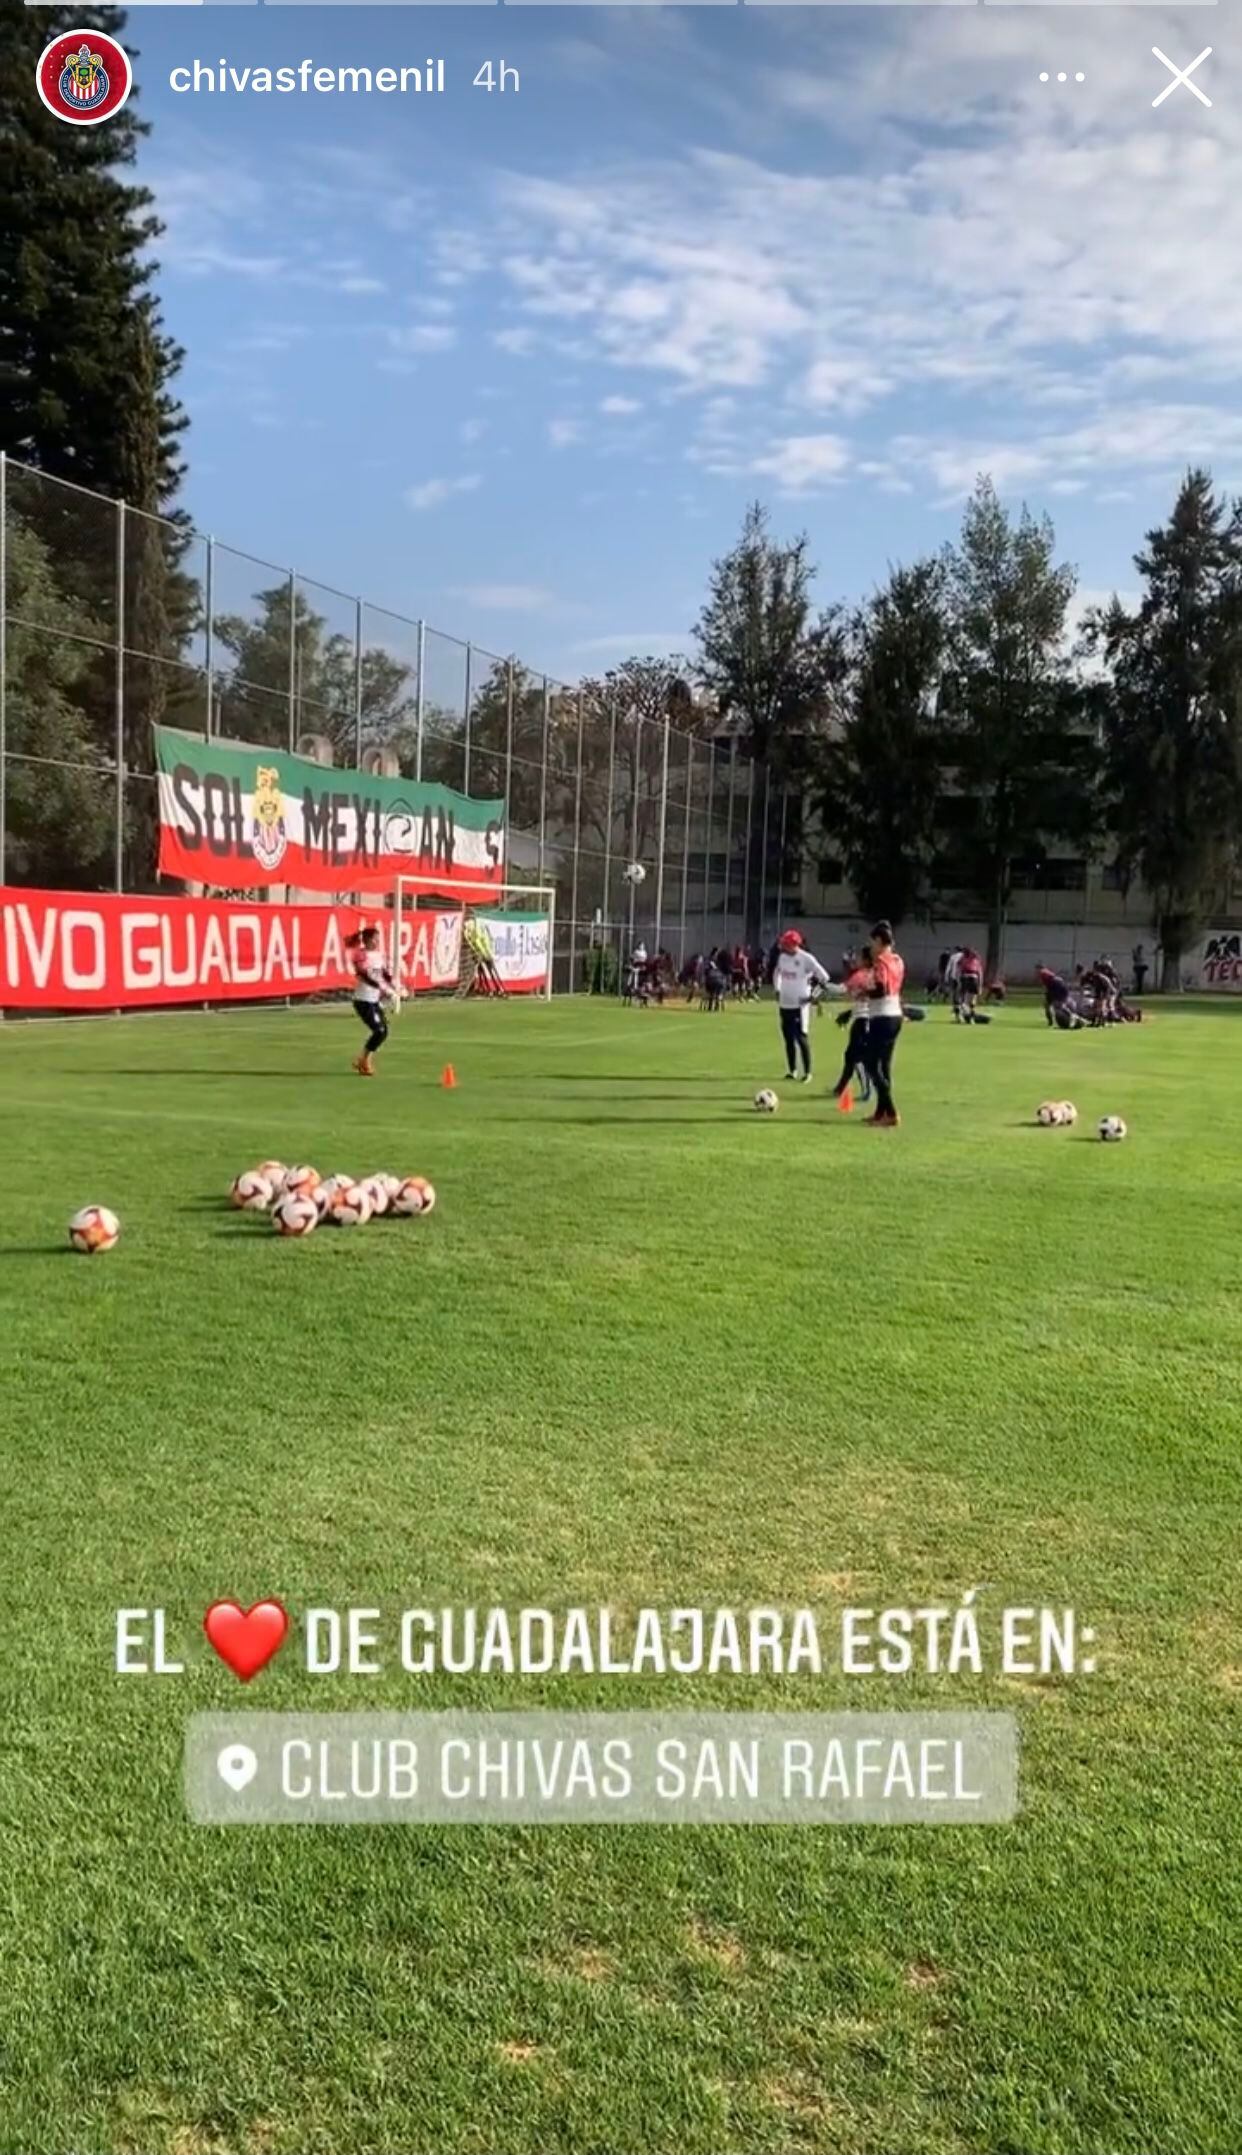 Chivas Femenil entrena con apoyo de sus fans